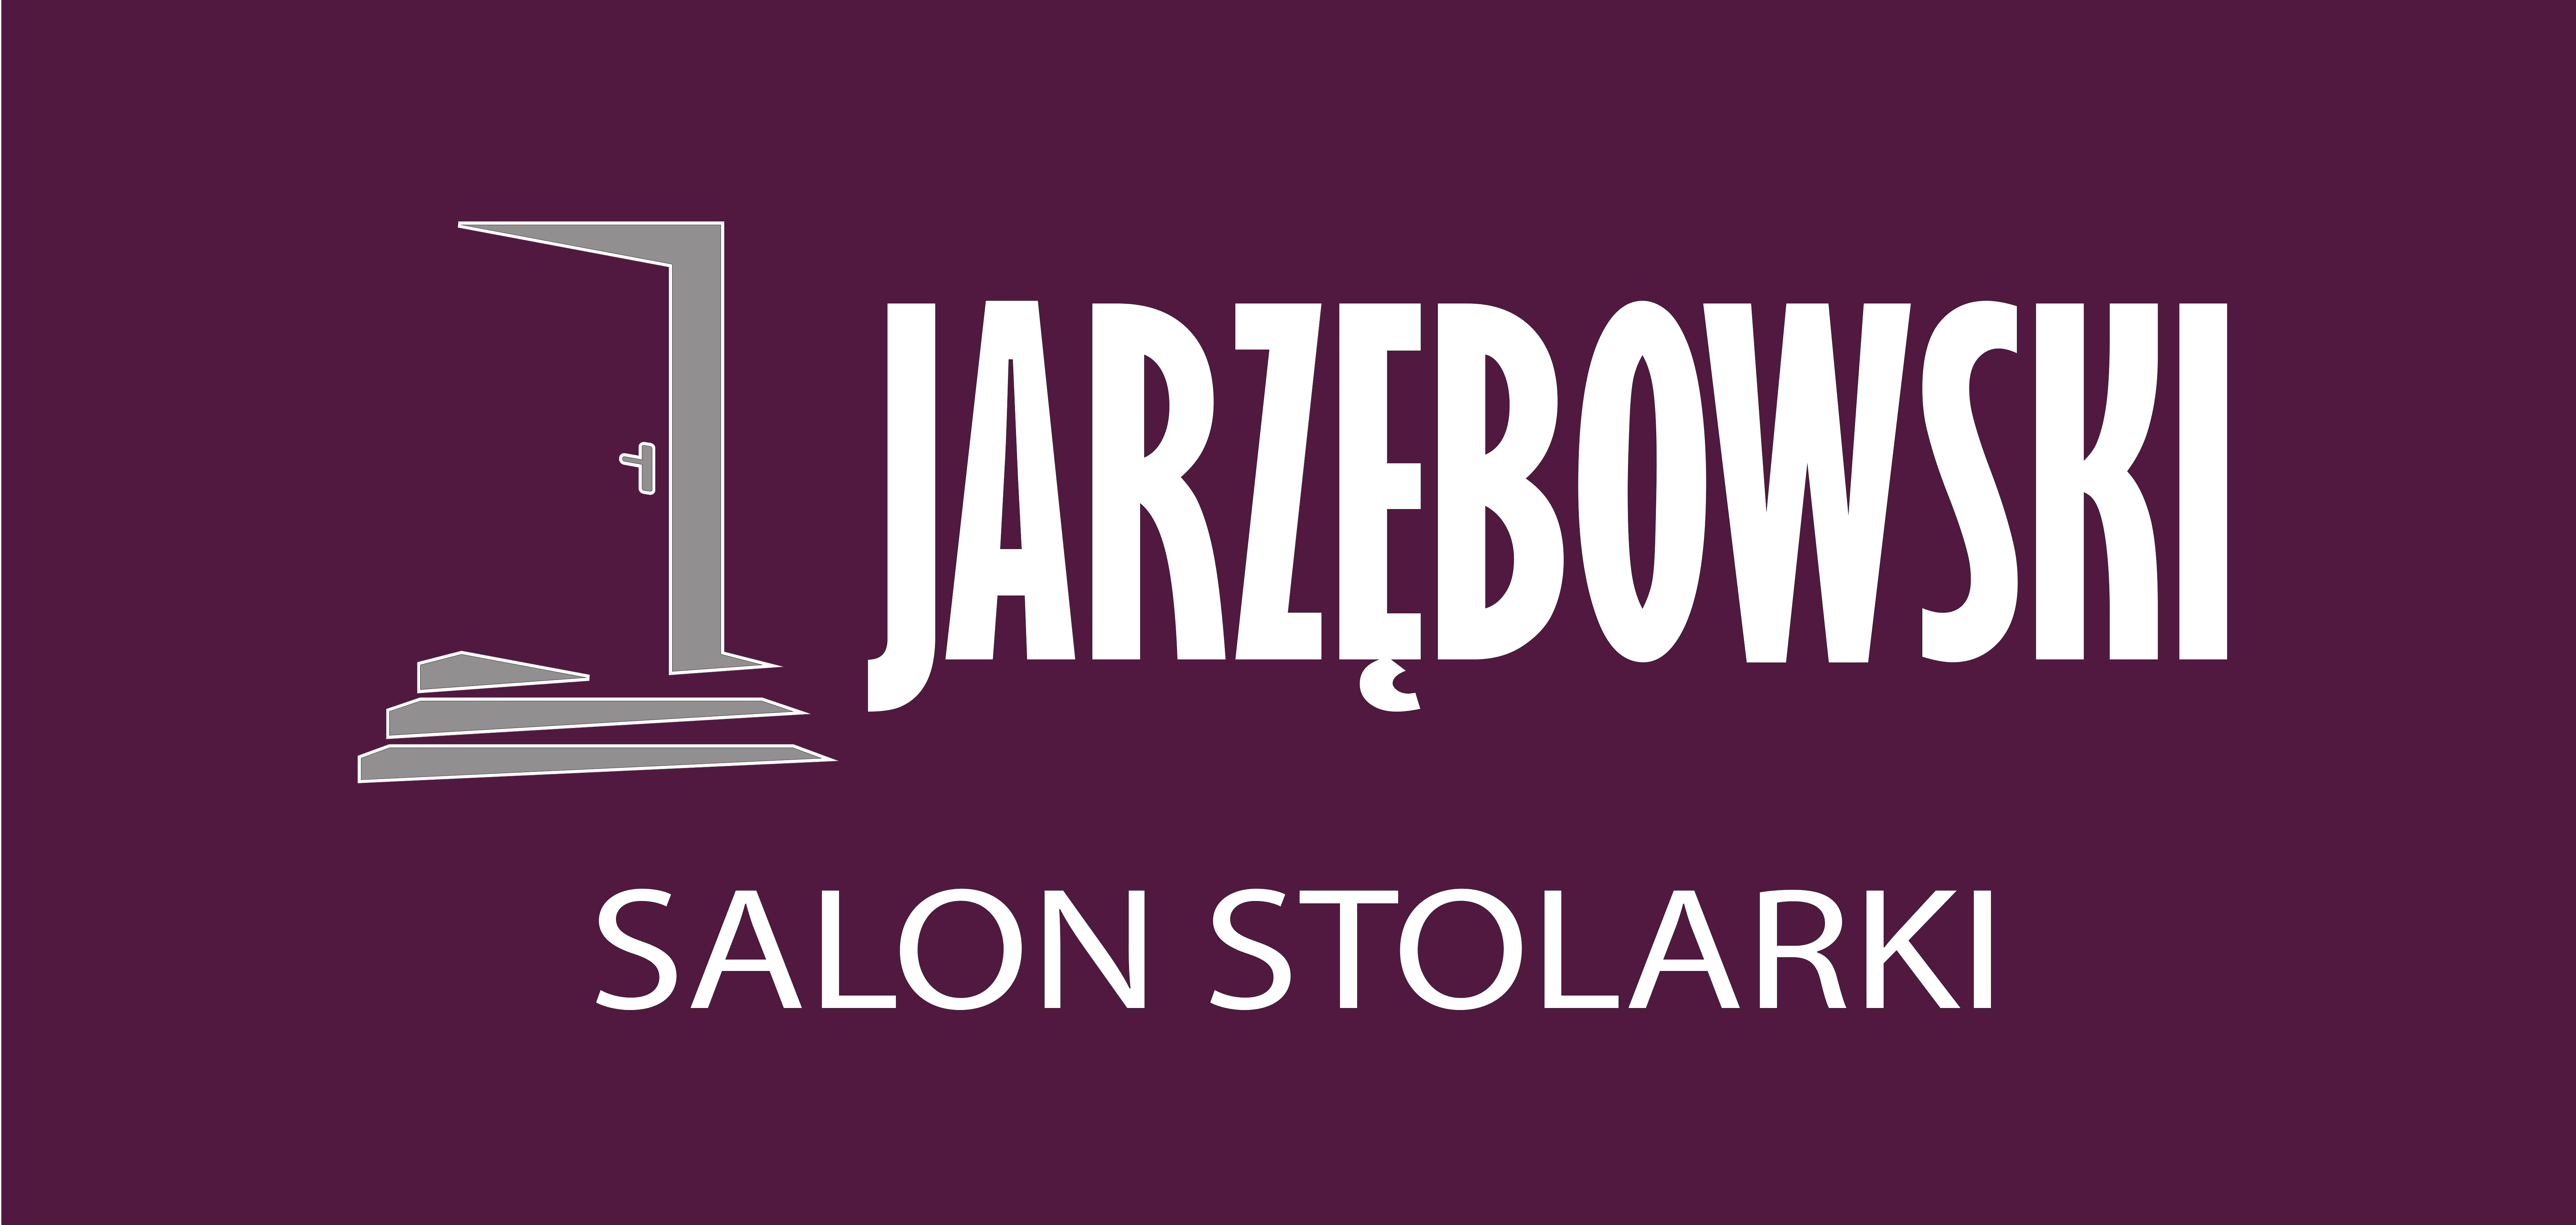 Salon Stolarki „Jarzębowski” Jerzy Jarzębowski